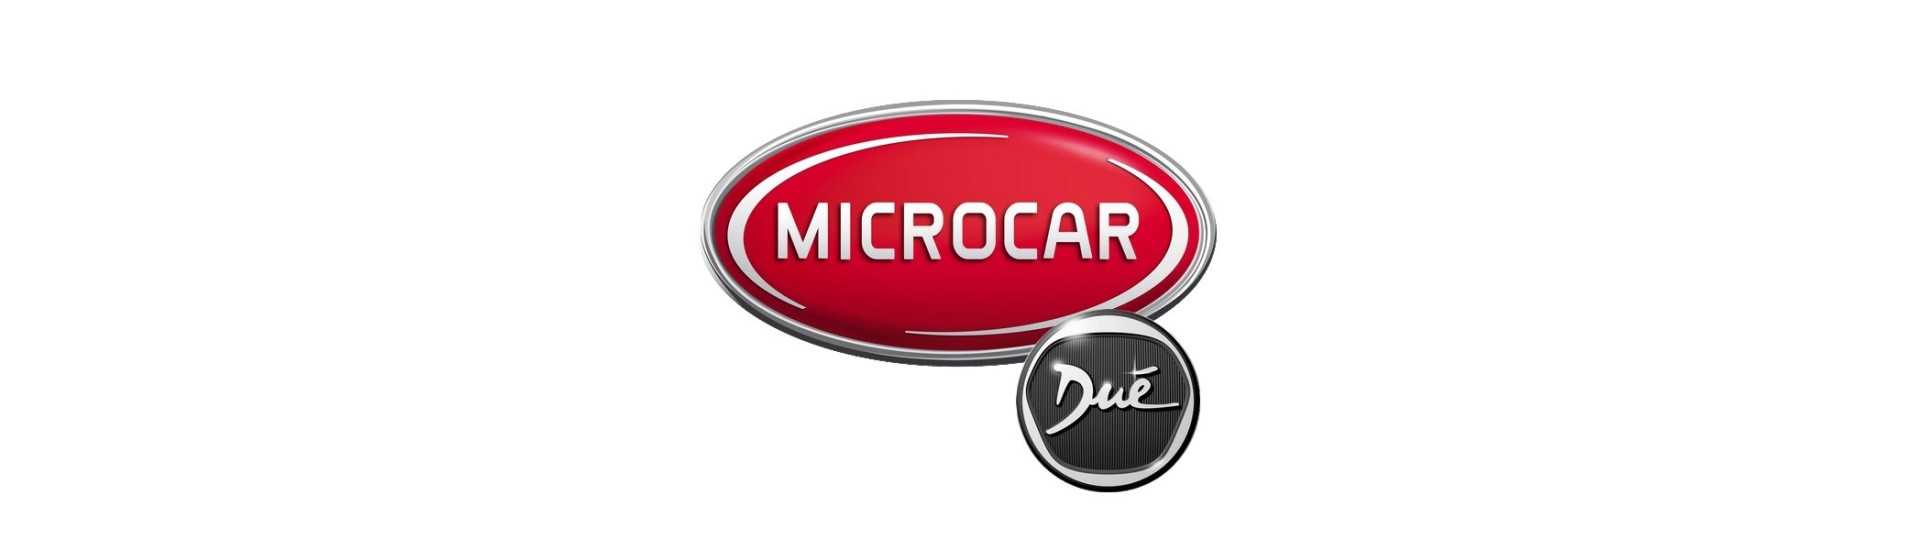 Suport metalic la cel mai bun preț pentru o mașină fără permis Microcar Dué